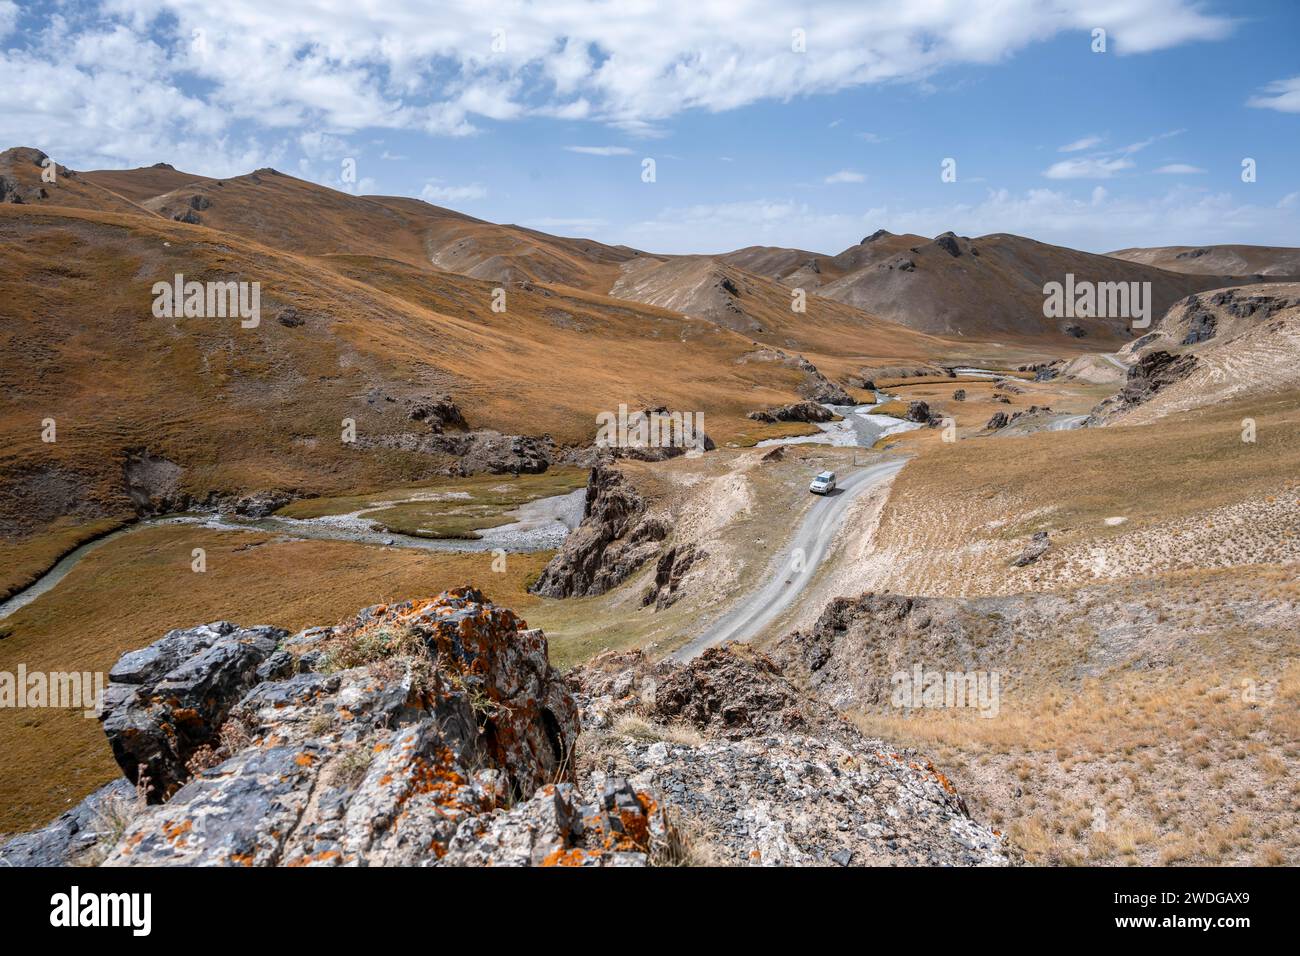 Véhicule hors route sur une route, piste entre des collines avec de l'herbe jaune, la rivière Kol Suu serpente à travers une vallée de montagne, province de Naryn, Kirghizistan Banque D'Images